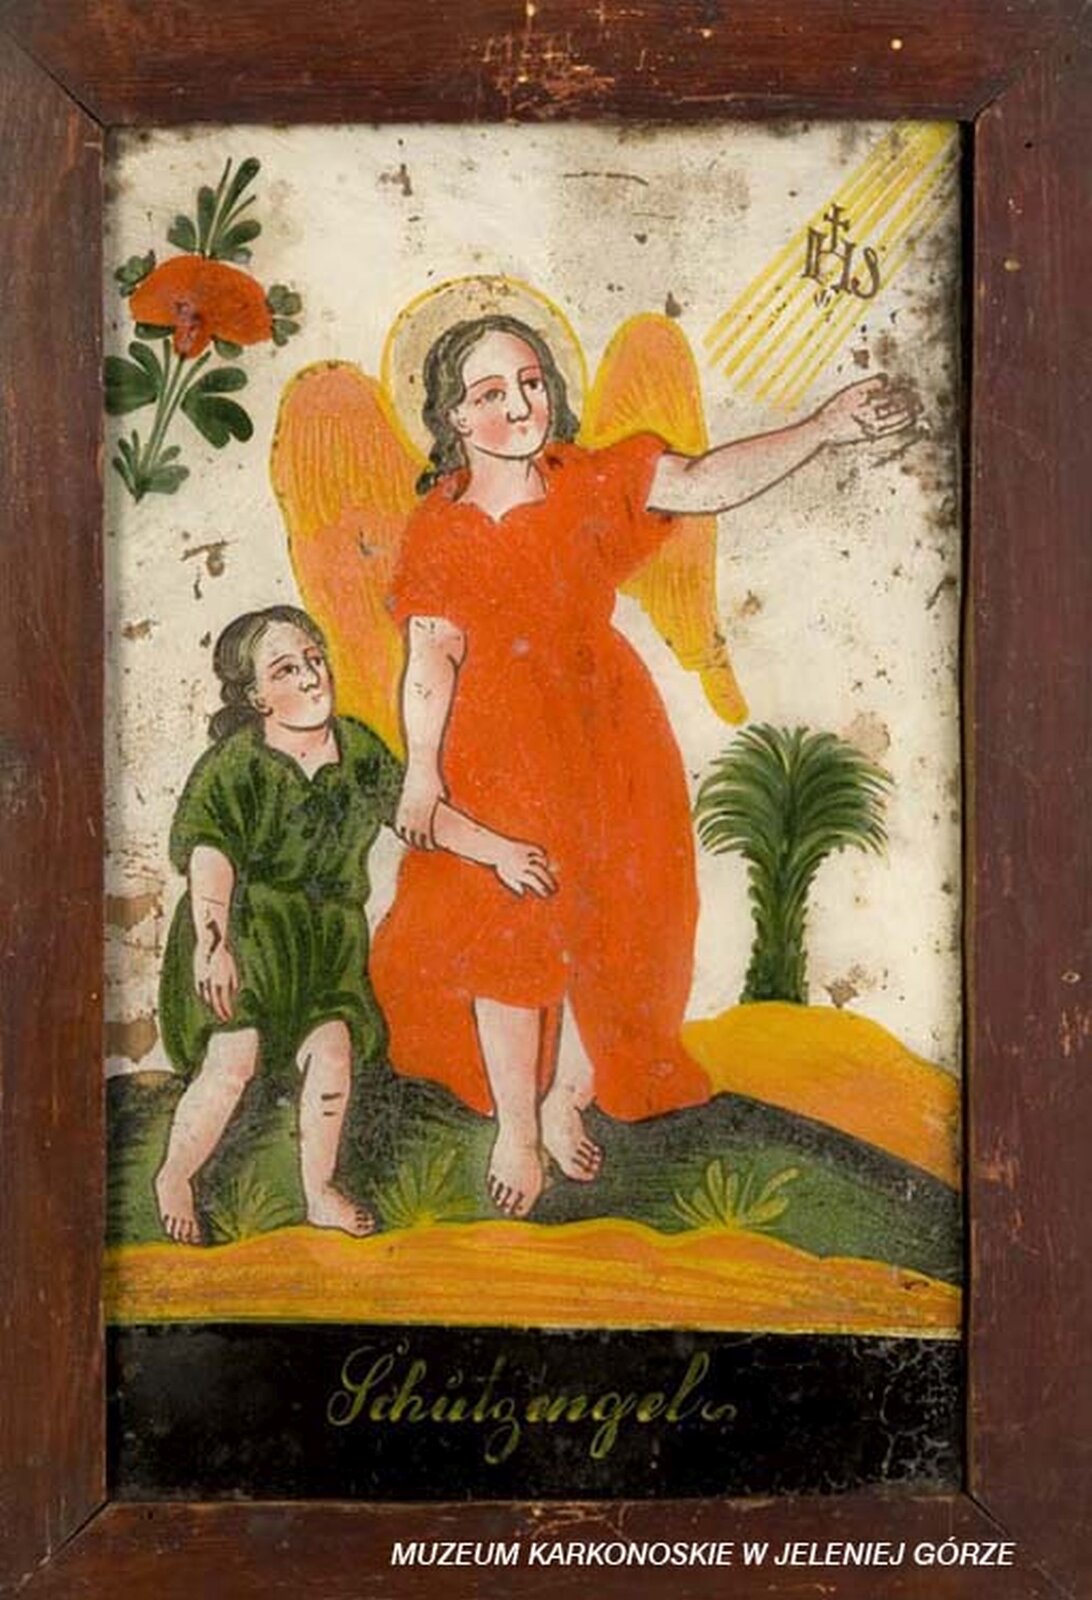 Ilustracja przedstawia malowidło na szkle, które ukazuje anioła prowadzącego za rękę dziecko. Anioł ma pomarańczową szatę, a lewą ręką wskazuje na promienie boskie z napisem IHS. Dziecko jest ubrane w zieloną szatę. W tle widać drzewo palmowe i czerwony kwiat.